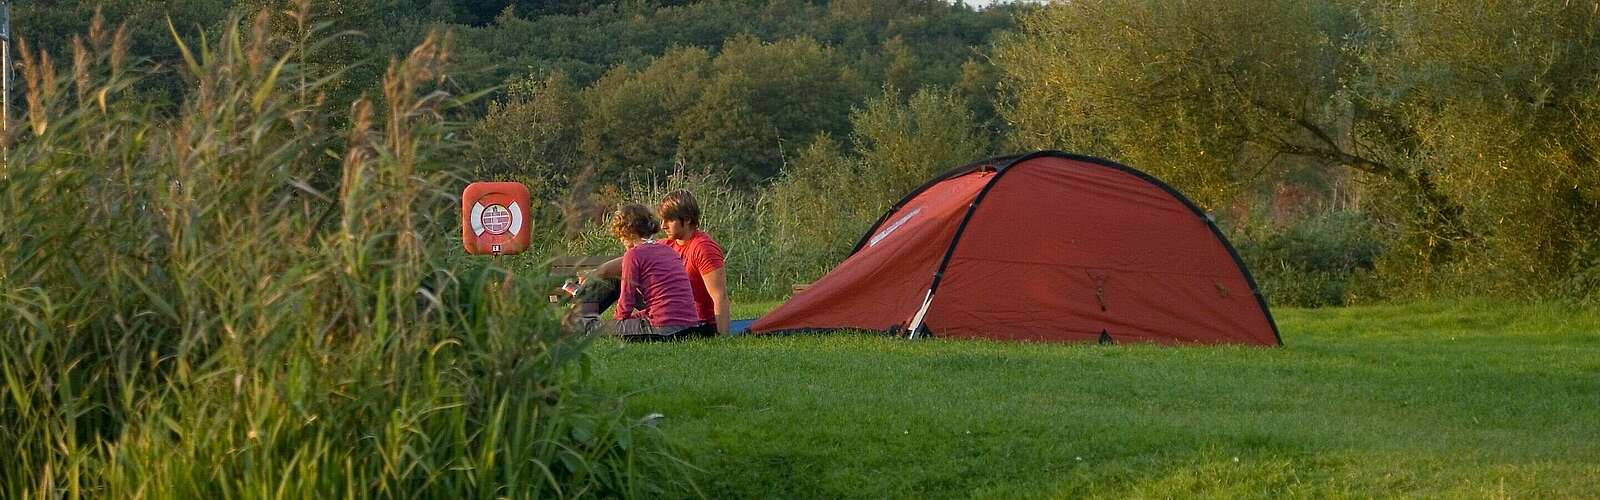 Campingzelt in der Natur,
        
    

        Foto: Fotograf / Lizenz - Media Import/Wolfgang Ehn